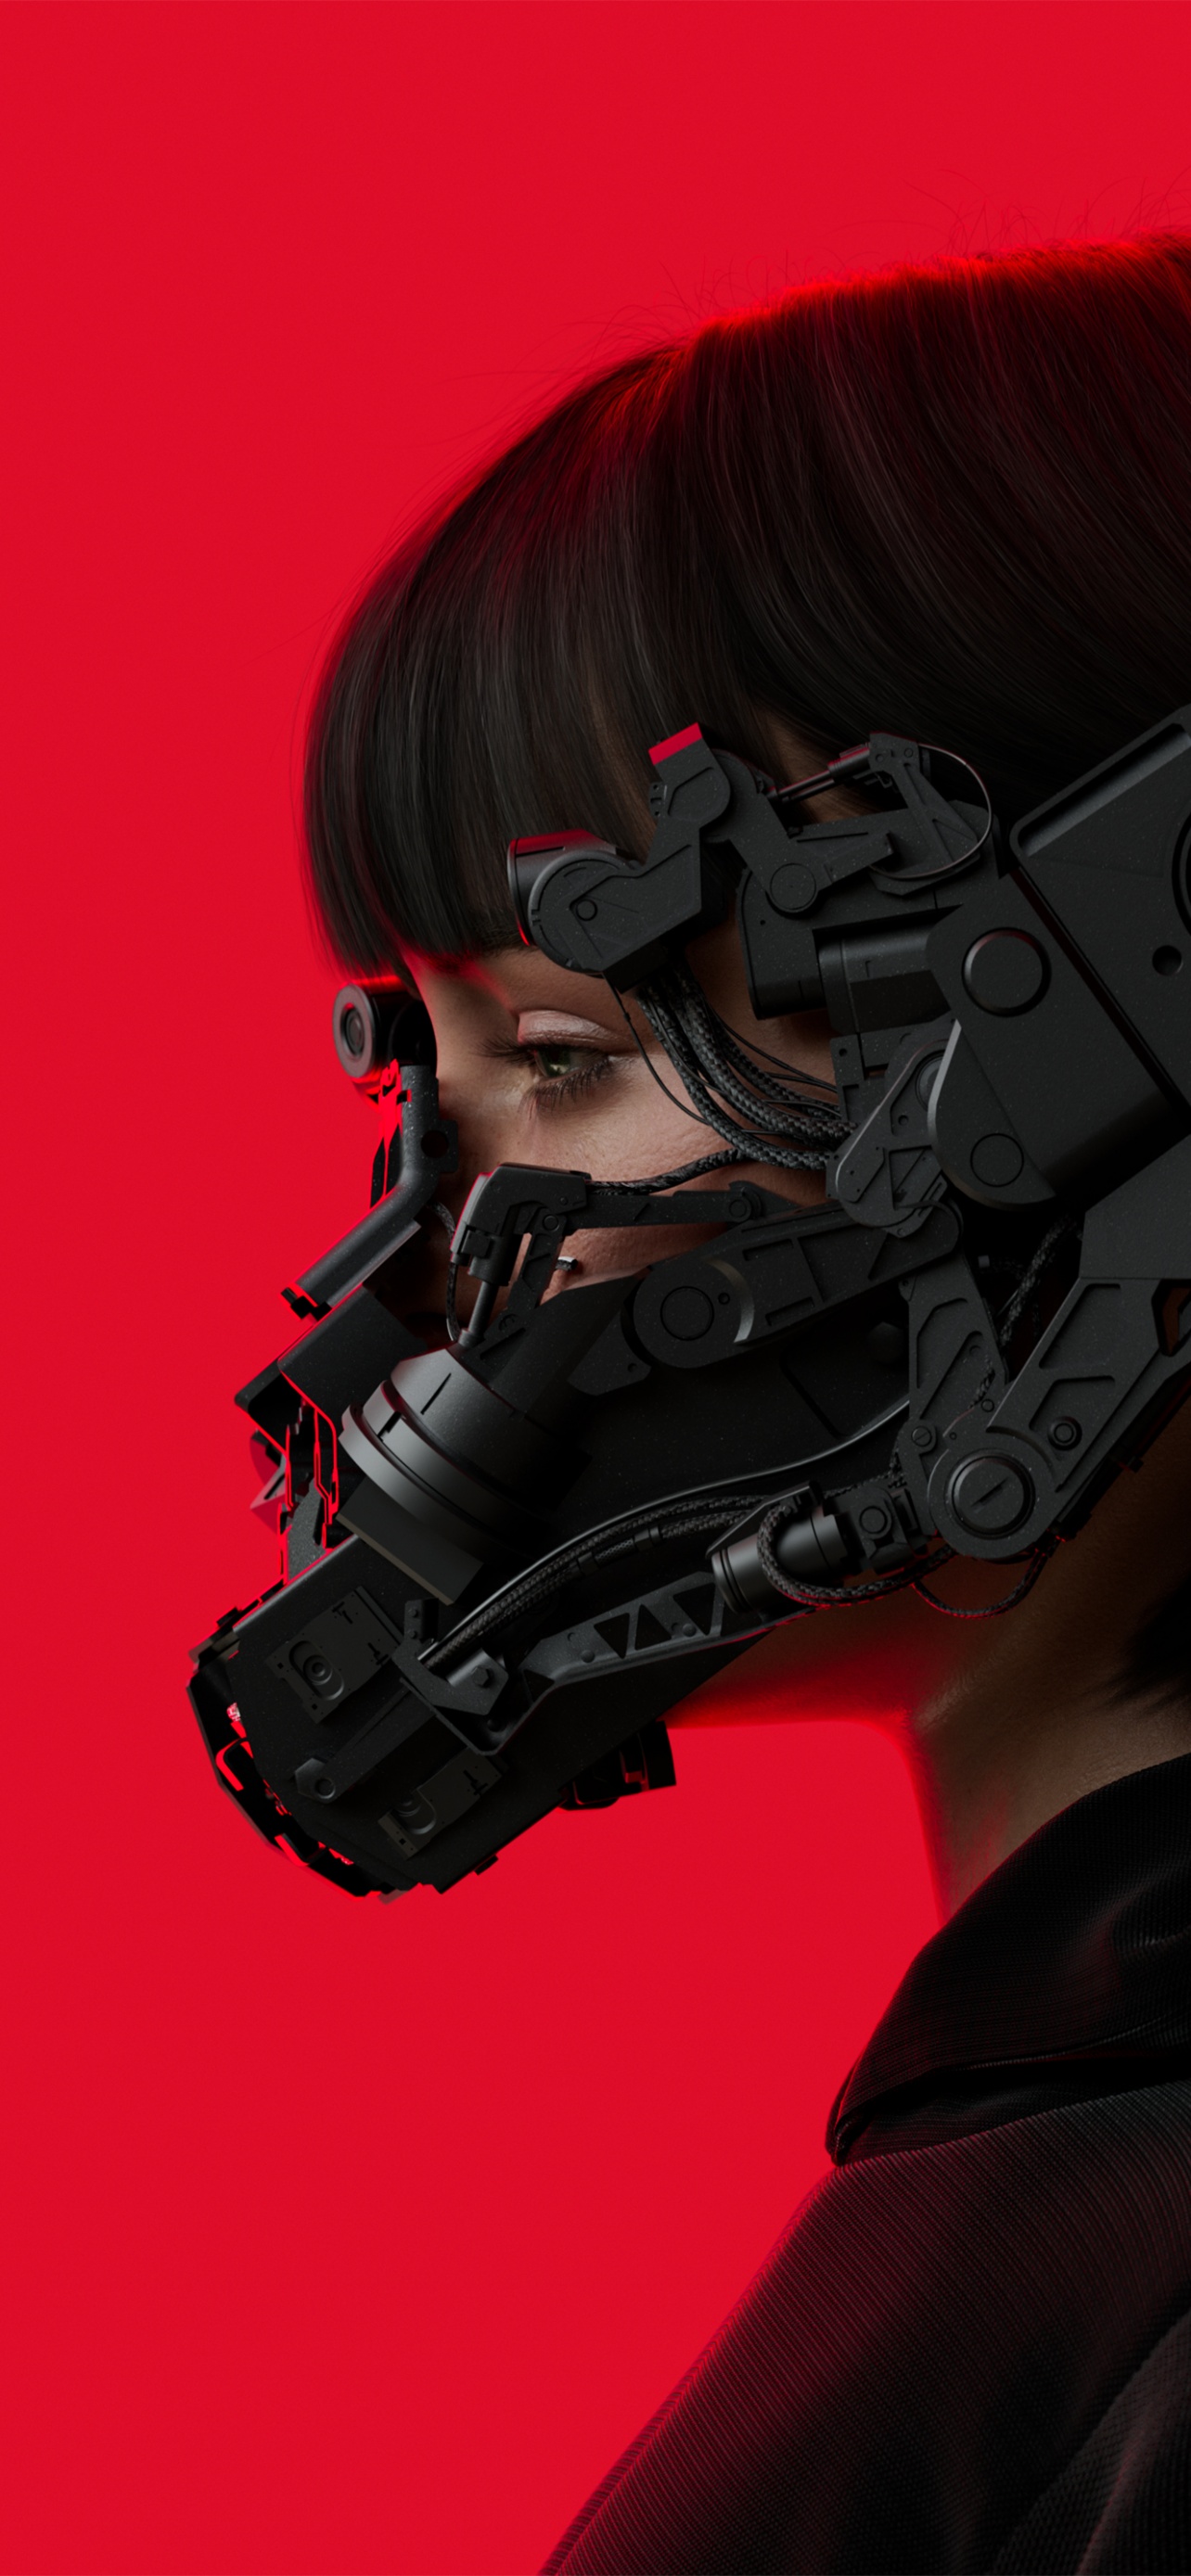 Hình nền Cyberpunk: Thử một phong cách mới và độc đáo với hình nền Cyberpunk. Những bức ảnh đầy hoài bão về tương lai của nhân loại sẽ cho bạn những trải nghiệm đầy thú vị và khác biệt nhất qua màn hình của bạn.